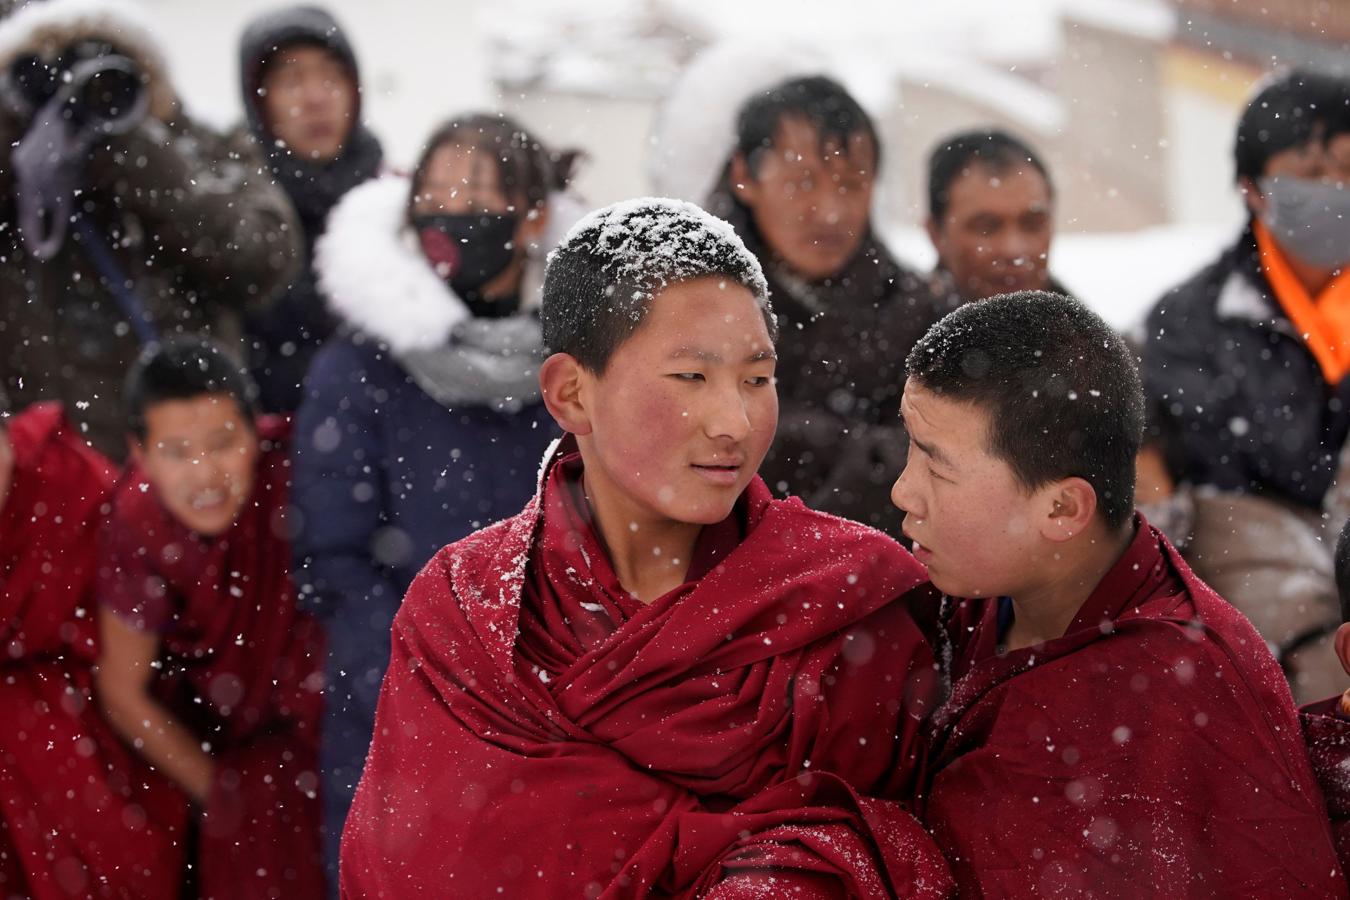 El frío y la nieve no impidió que los monjes tibetanos asistieran a una ceremonia en el Langmu Lamasery durante el 'Sunbathing Buddha Festival', el pasado domingo en la Prefectura Autónoma Tibetana de Gannan, provincia de Gansu, China.